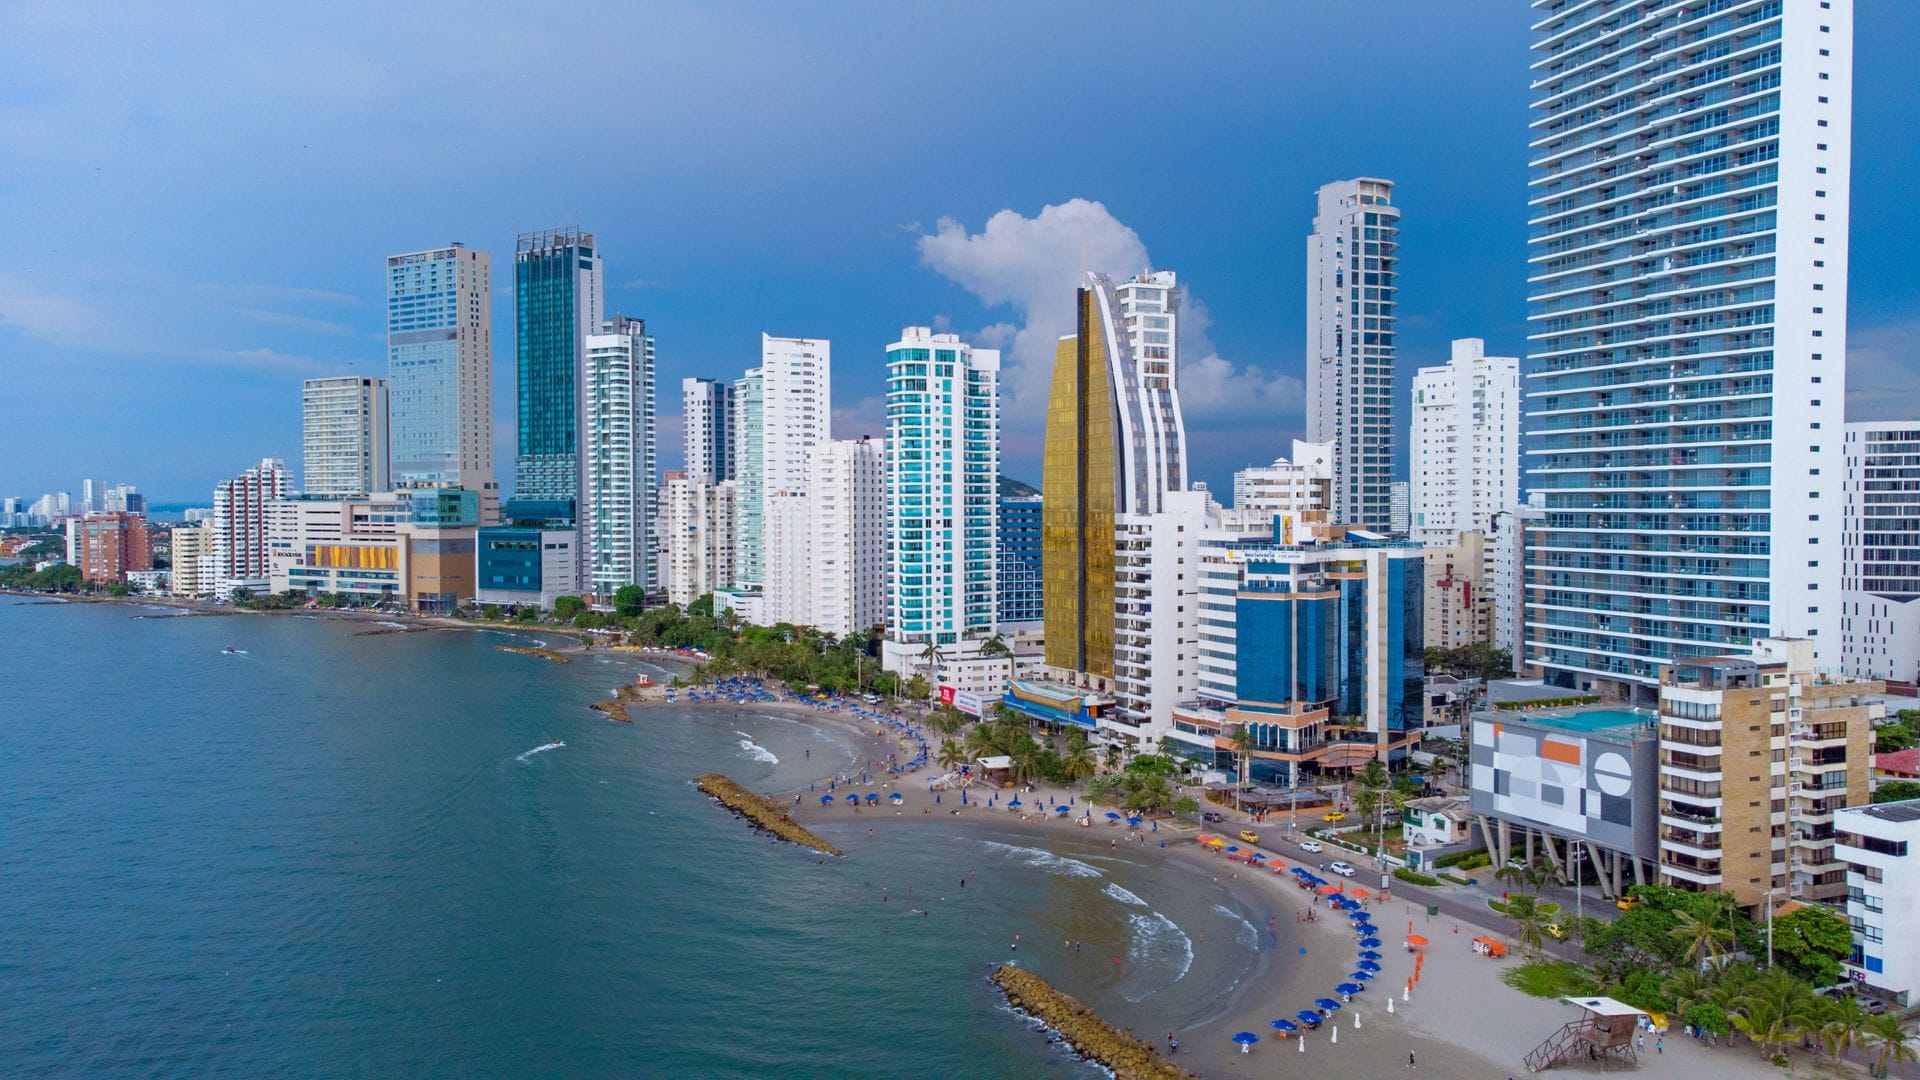 Hoteles en Cartagena de Indias- Dubai Cartagena colombia | Cartagena de Indias